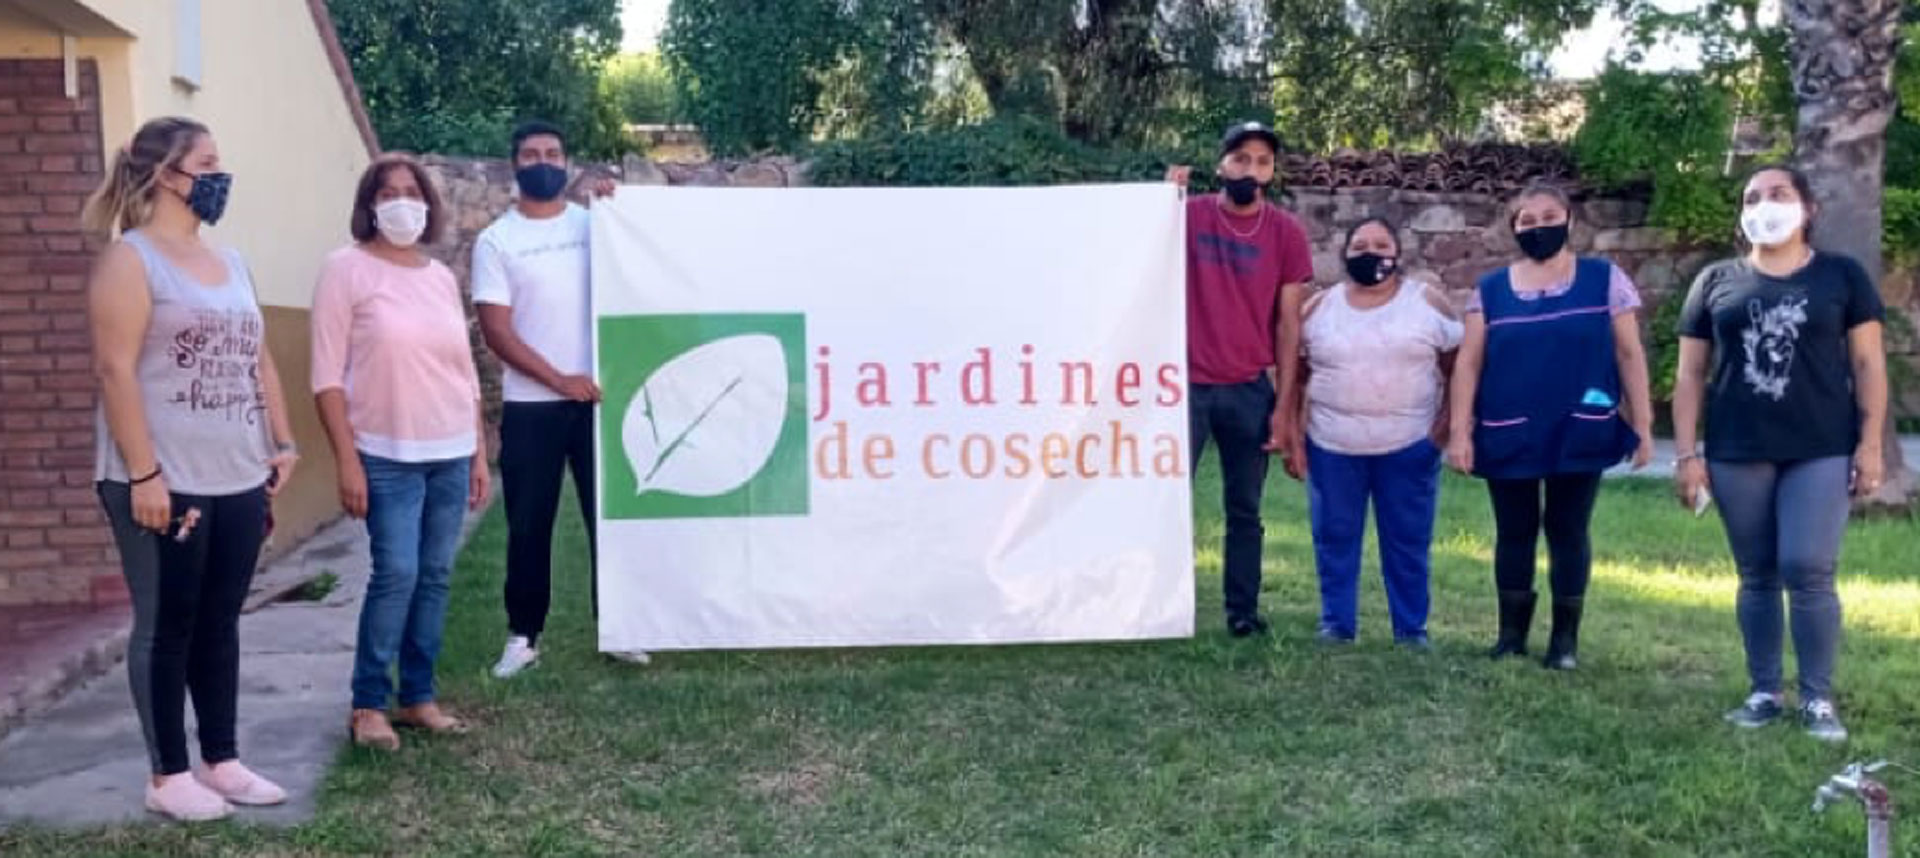 Foto de integrantes del jardín sosteniendo un cartel con el logo del jardín